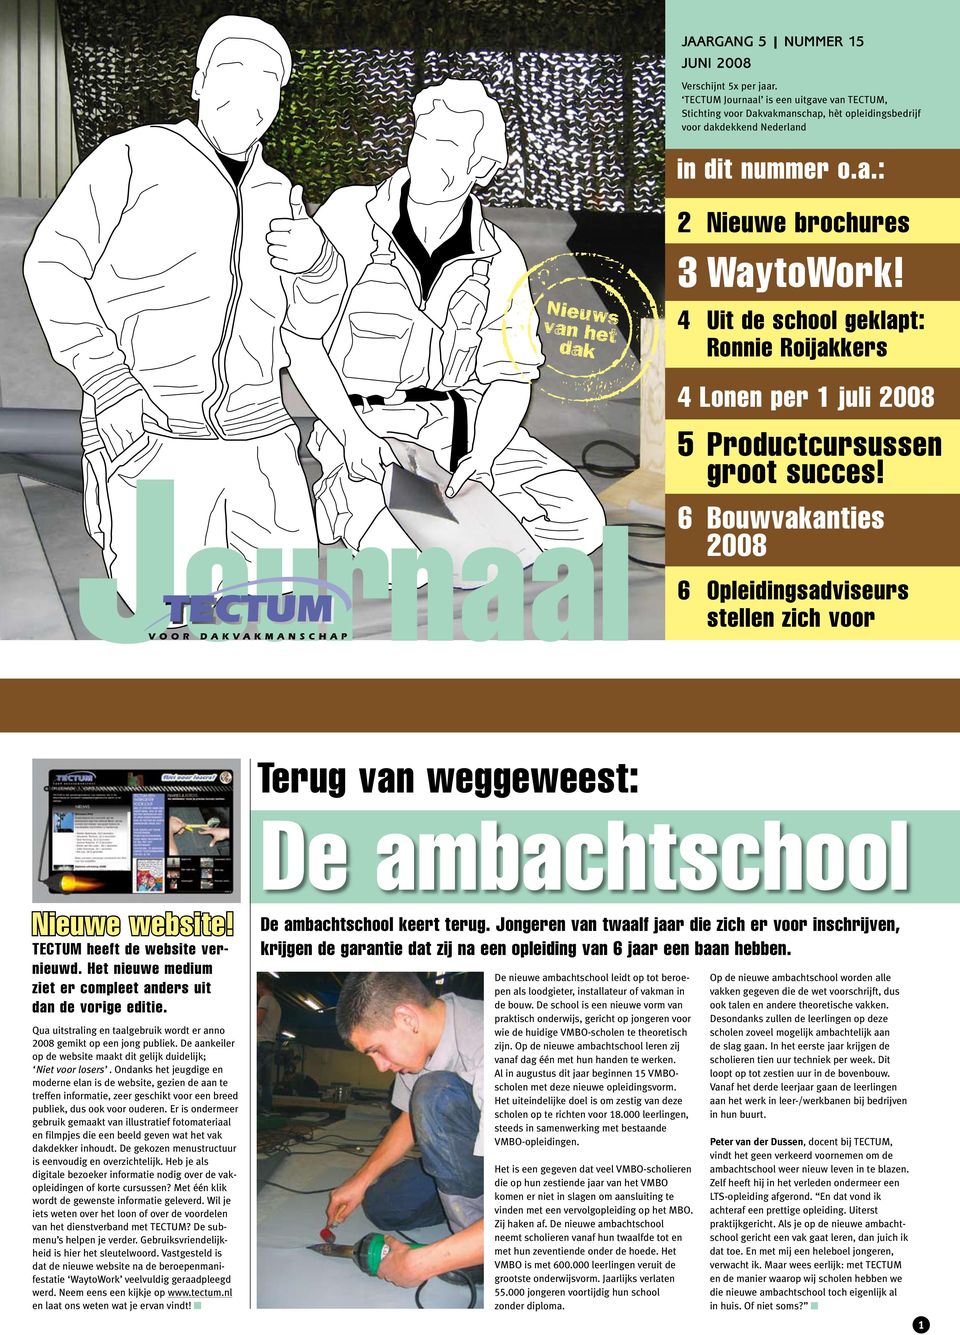 6 Bouwvakanties 2008 6 Opleidingsadviseurs stellen zich voor Terug van weggeweest: De ambachtschool Nieuwe website! TECTUM heeft de website vernieuwd.